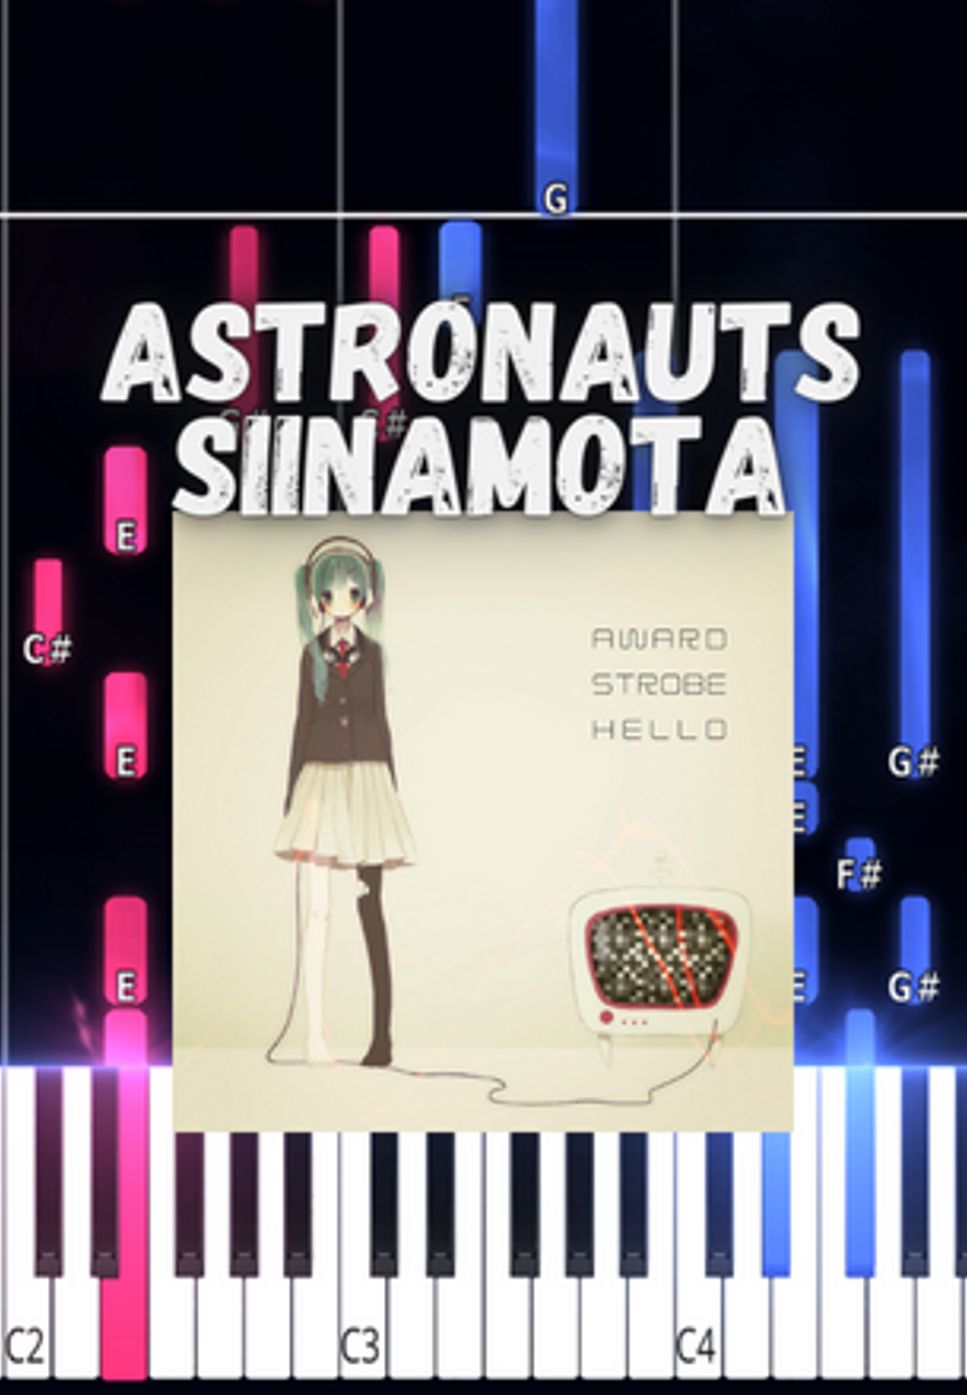 시나모타 - 우주비행사 (Piano ver. / easy ver. / siinamota) by Marco D.